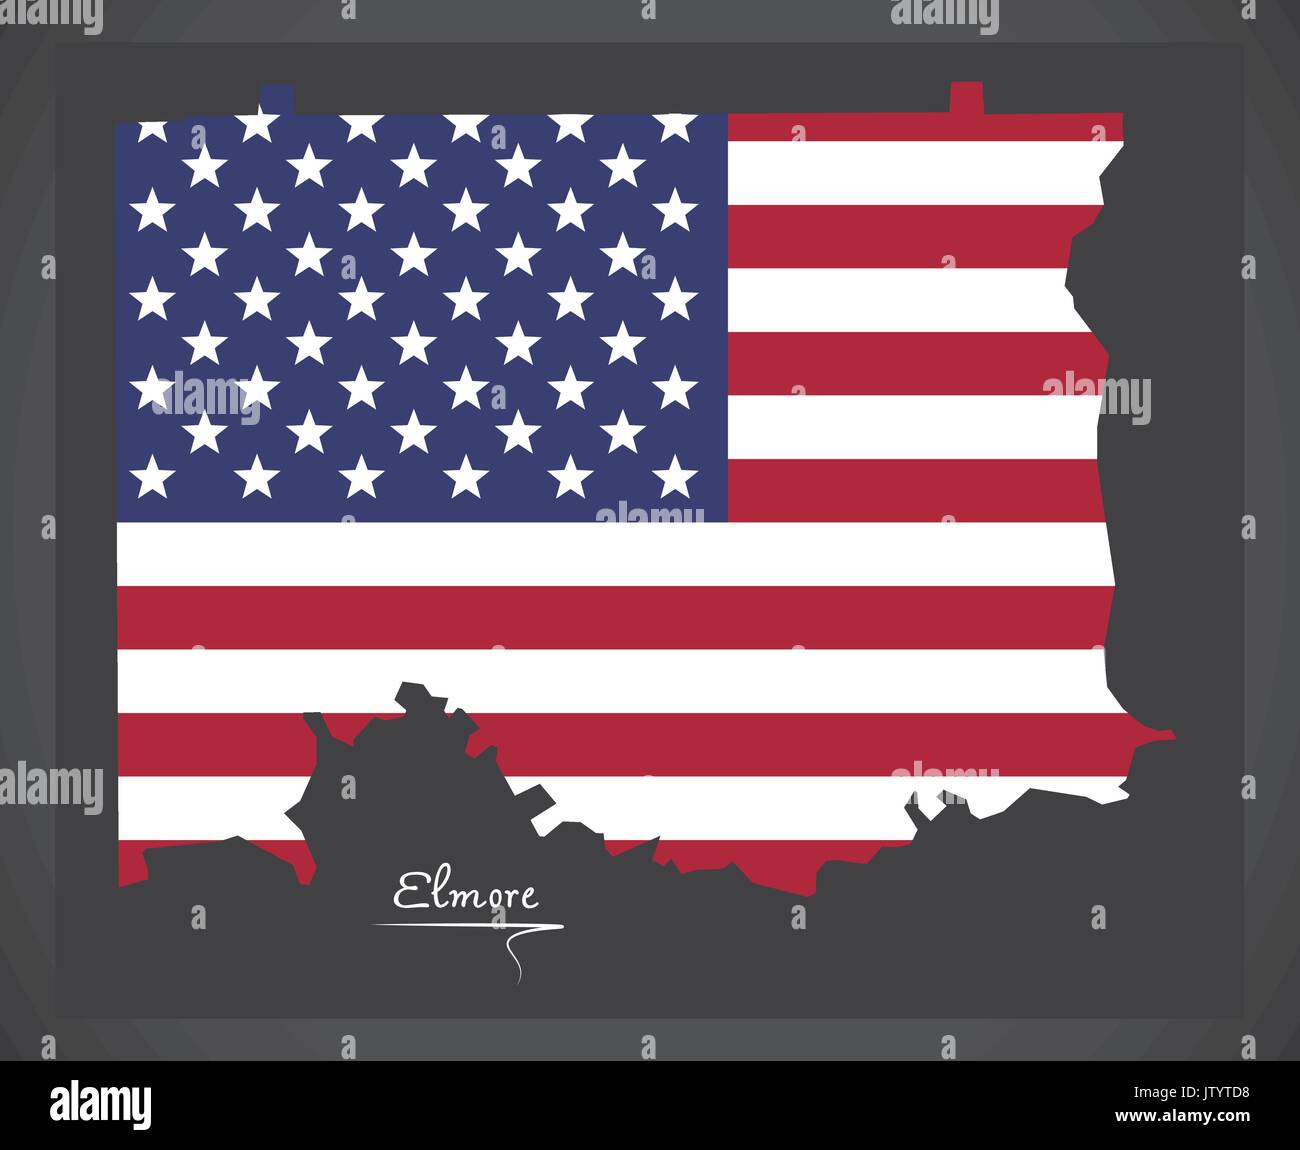 Elmore Comté Site d'Alabama USA avec American national flag illustration Illustration de Vecteur